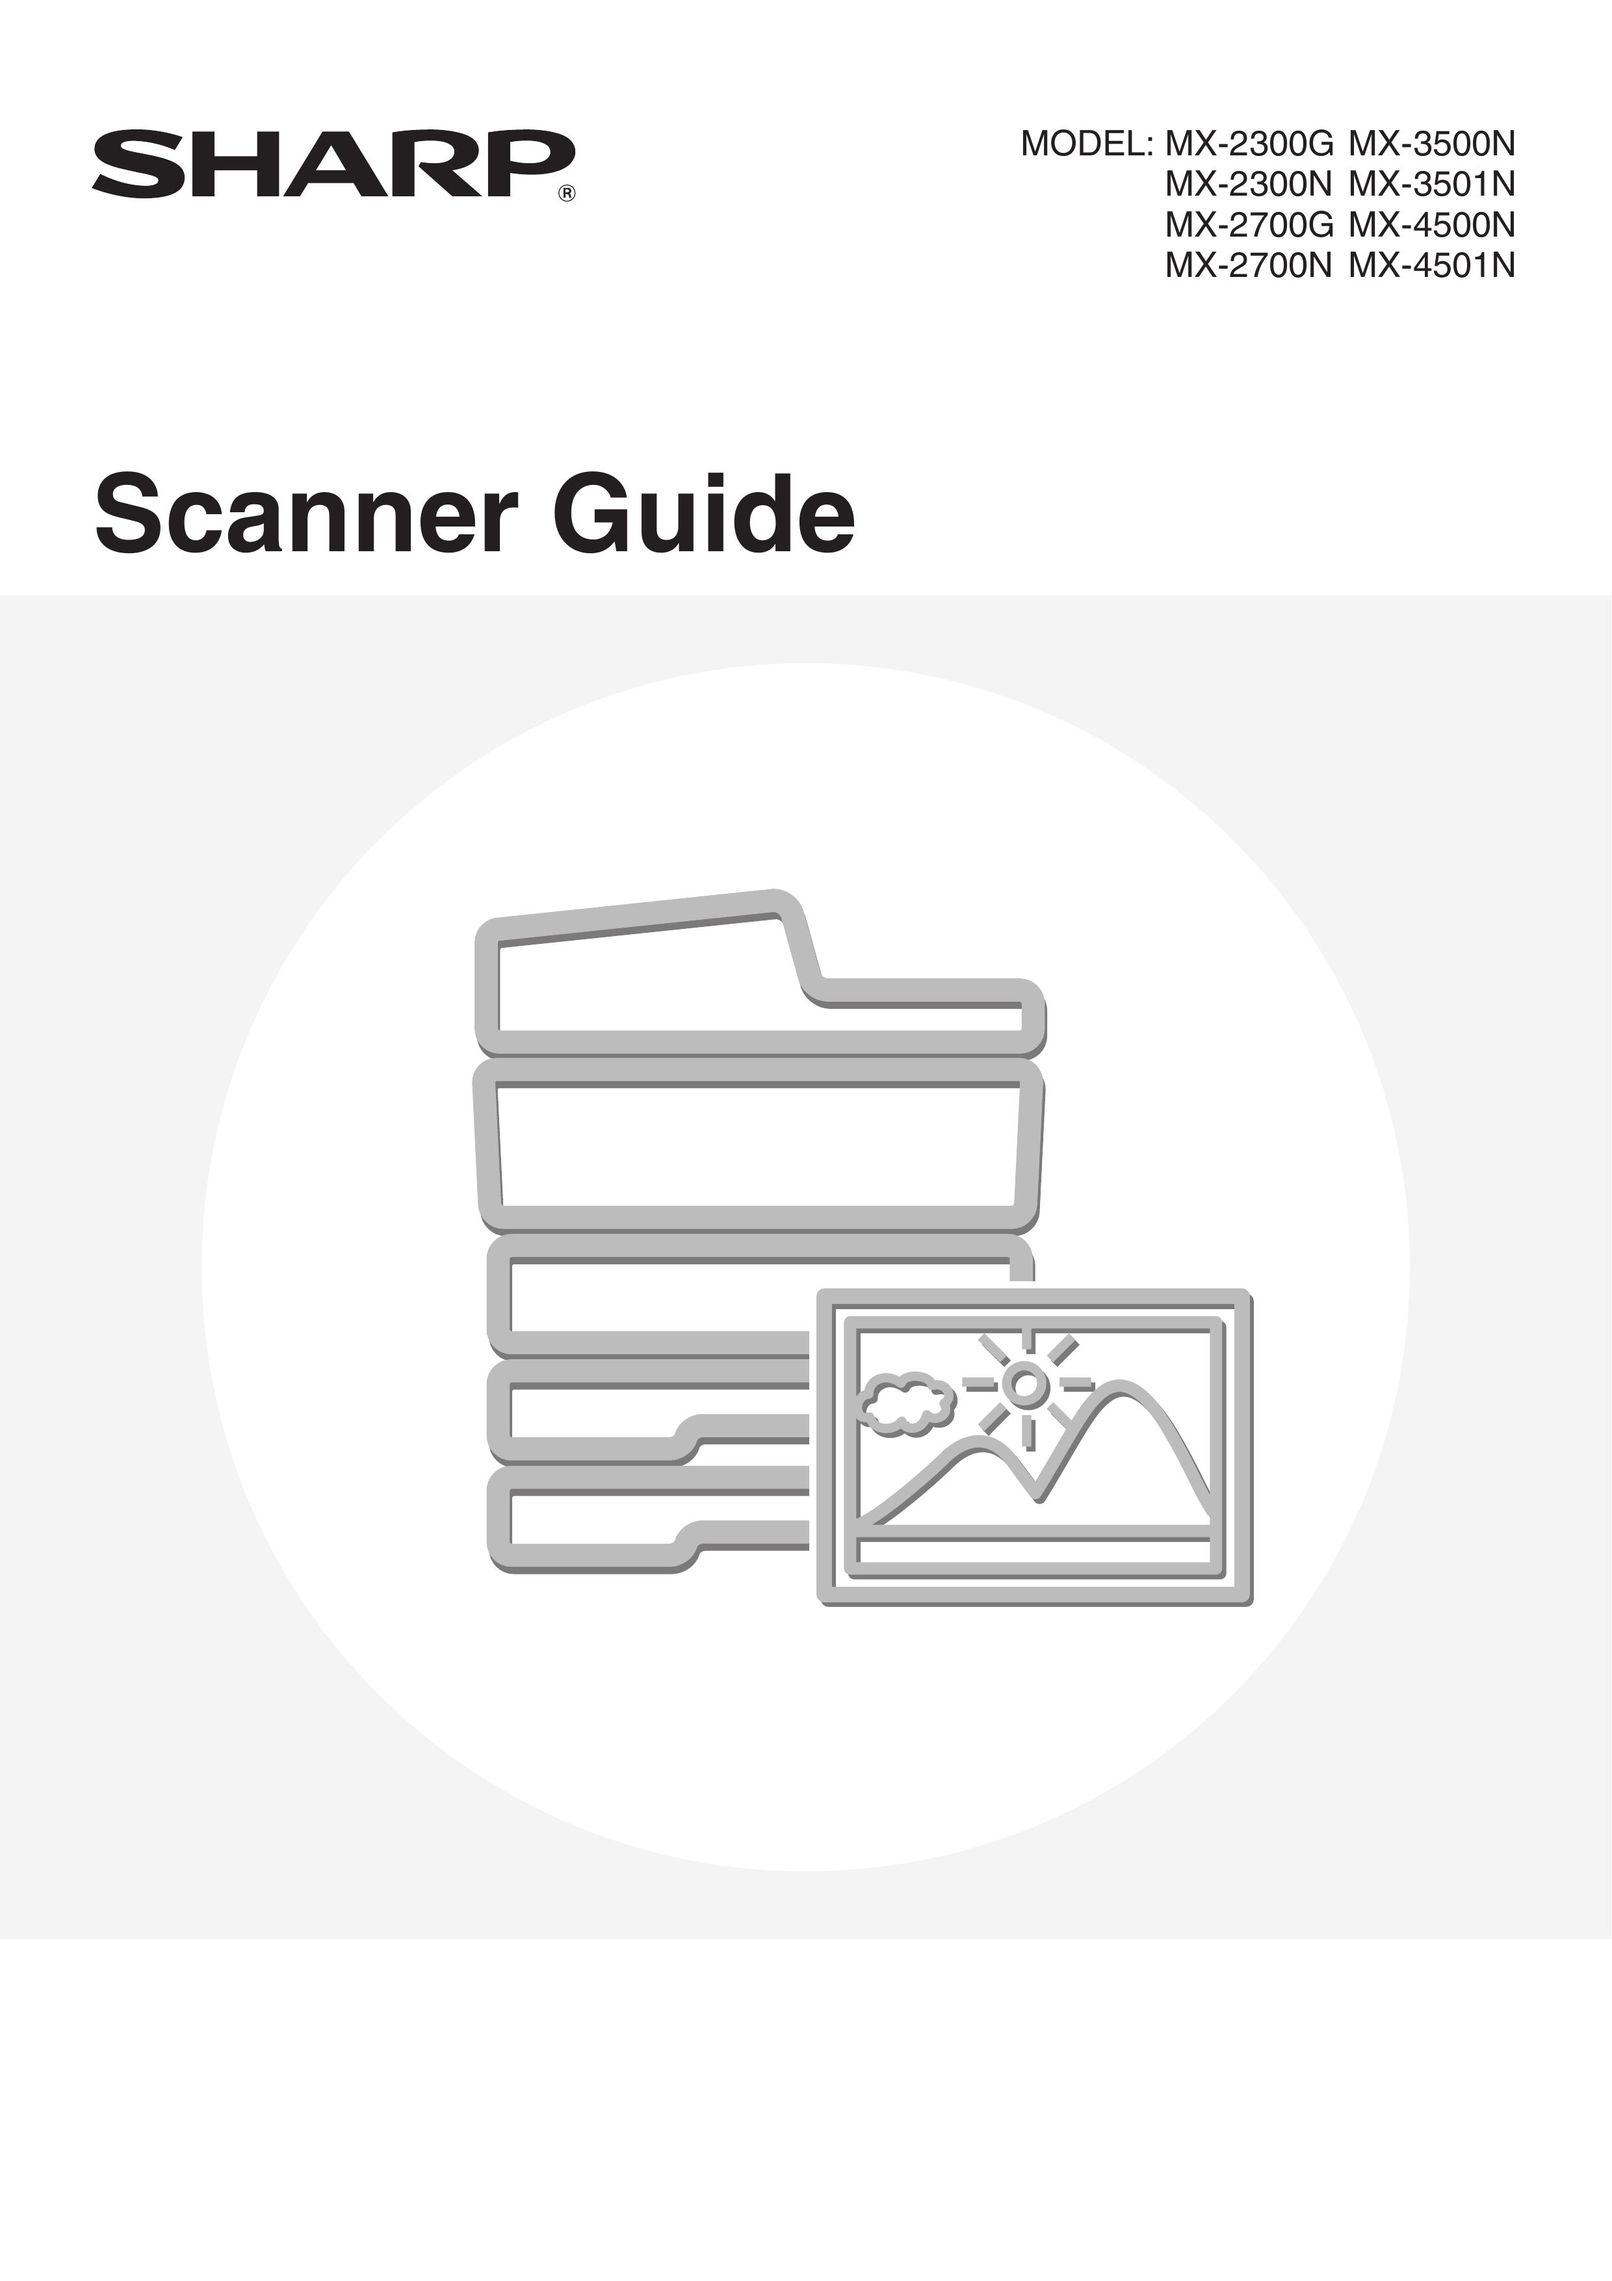 Sharp MX-2300N Scanner User Manual